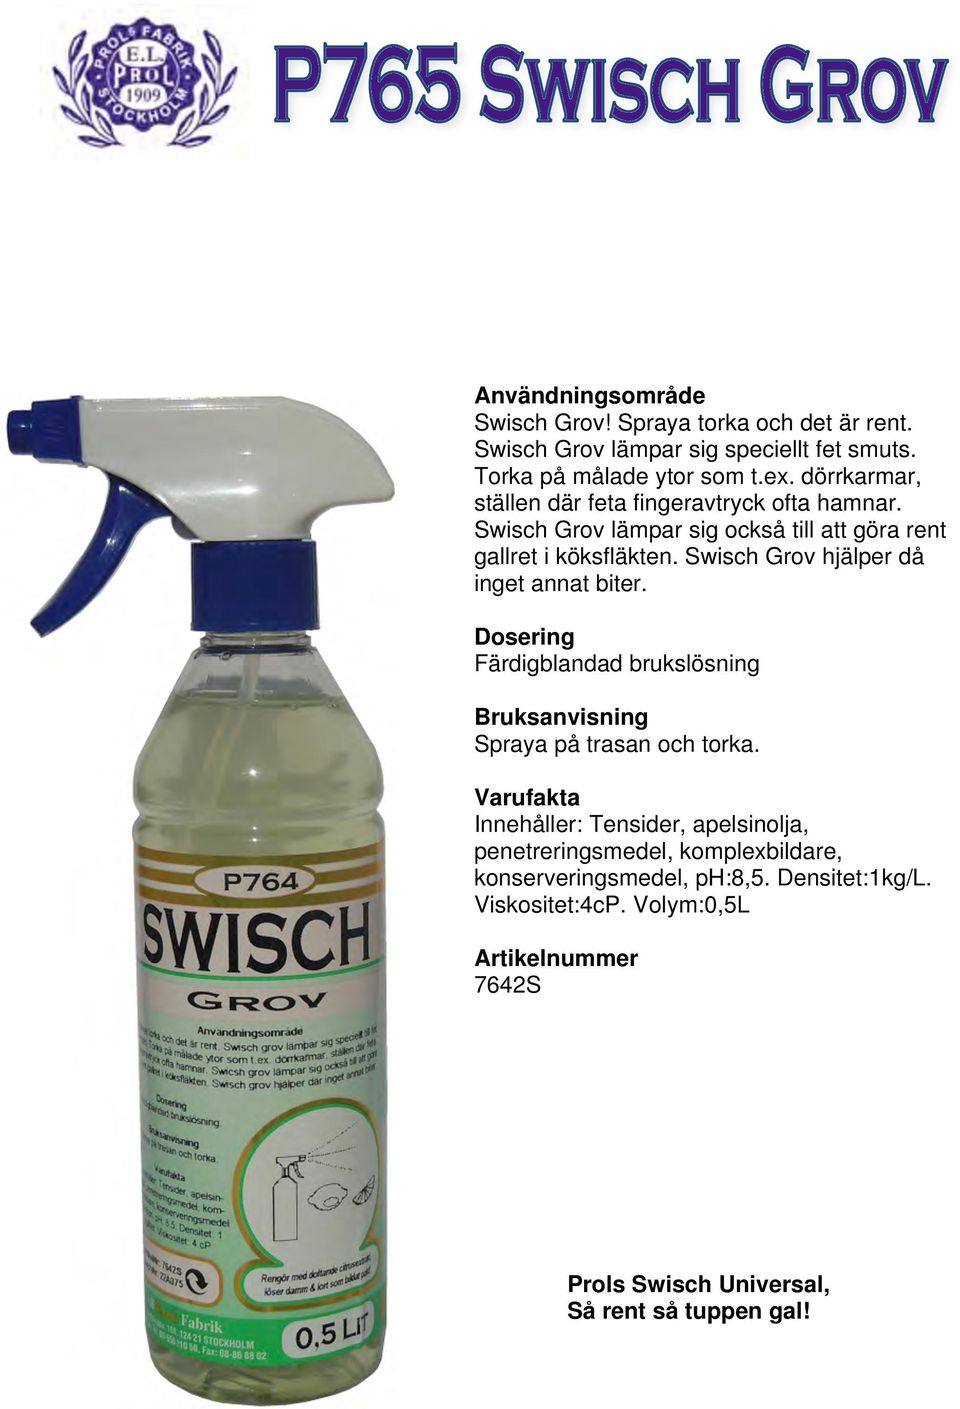 Swisch Grov hjälper då inget annat biter. Färdigblandad brukslösning Spraya på trasan och torka.